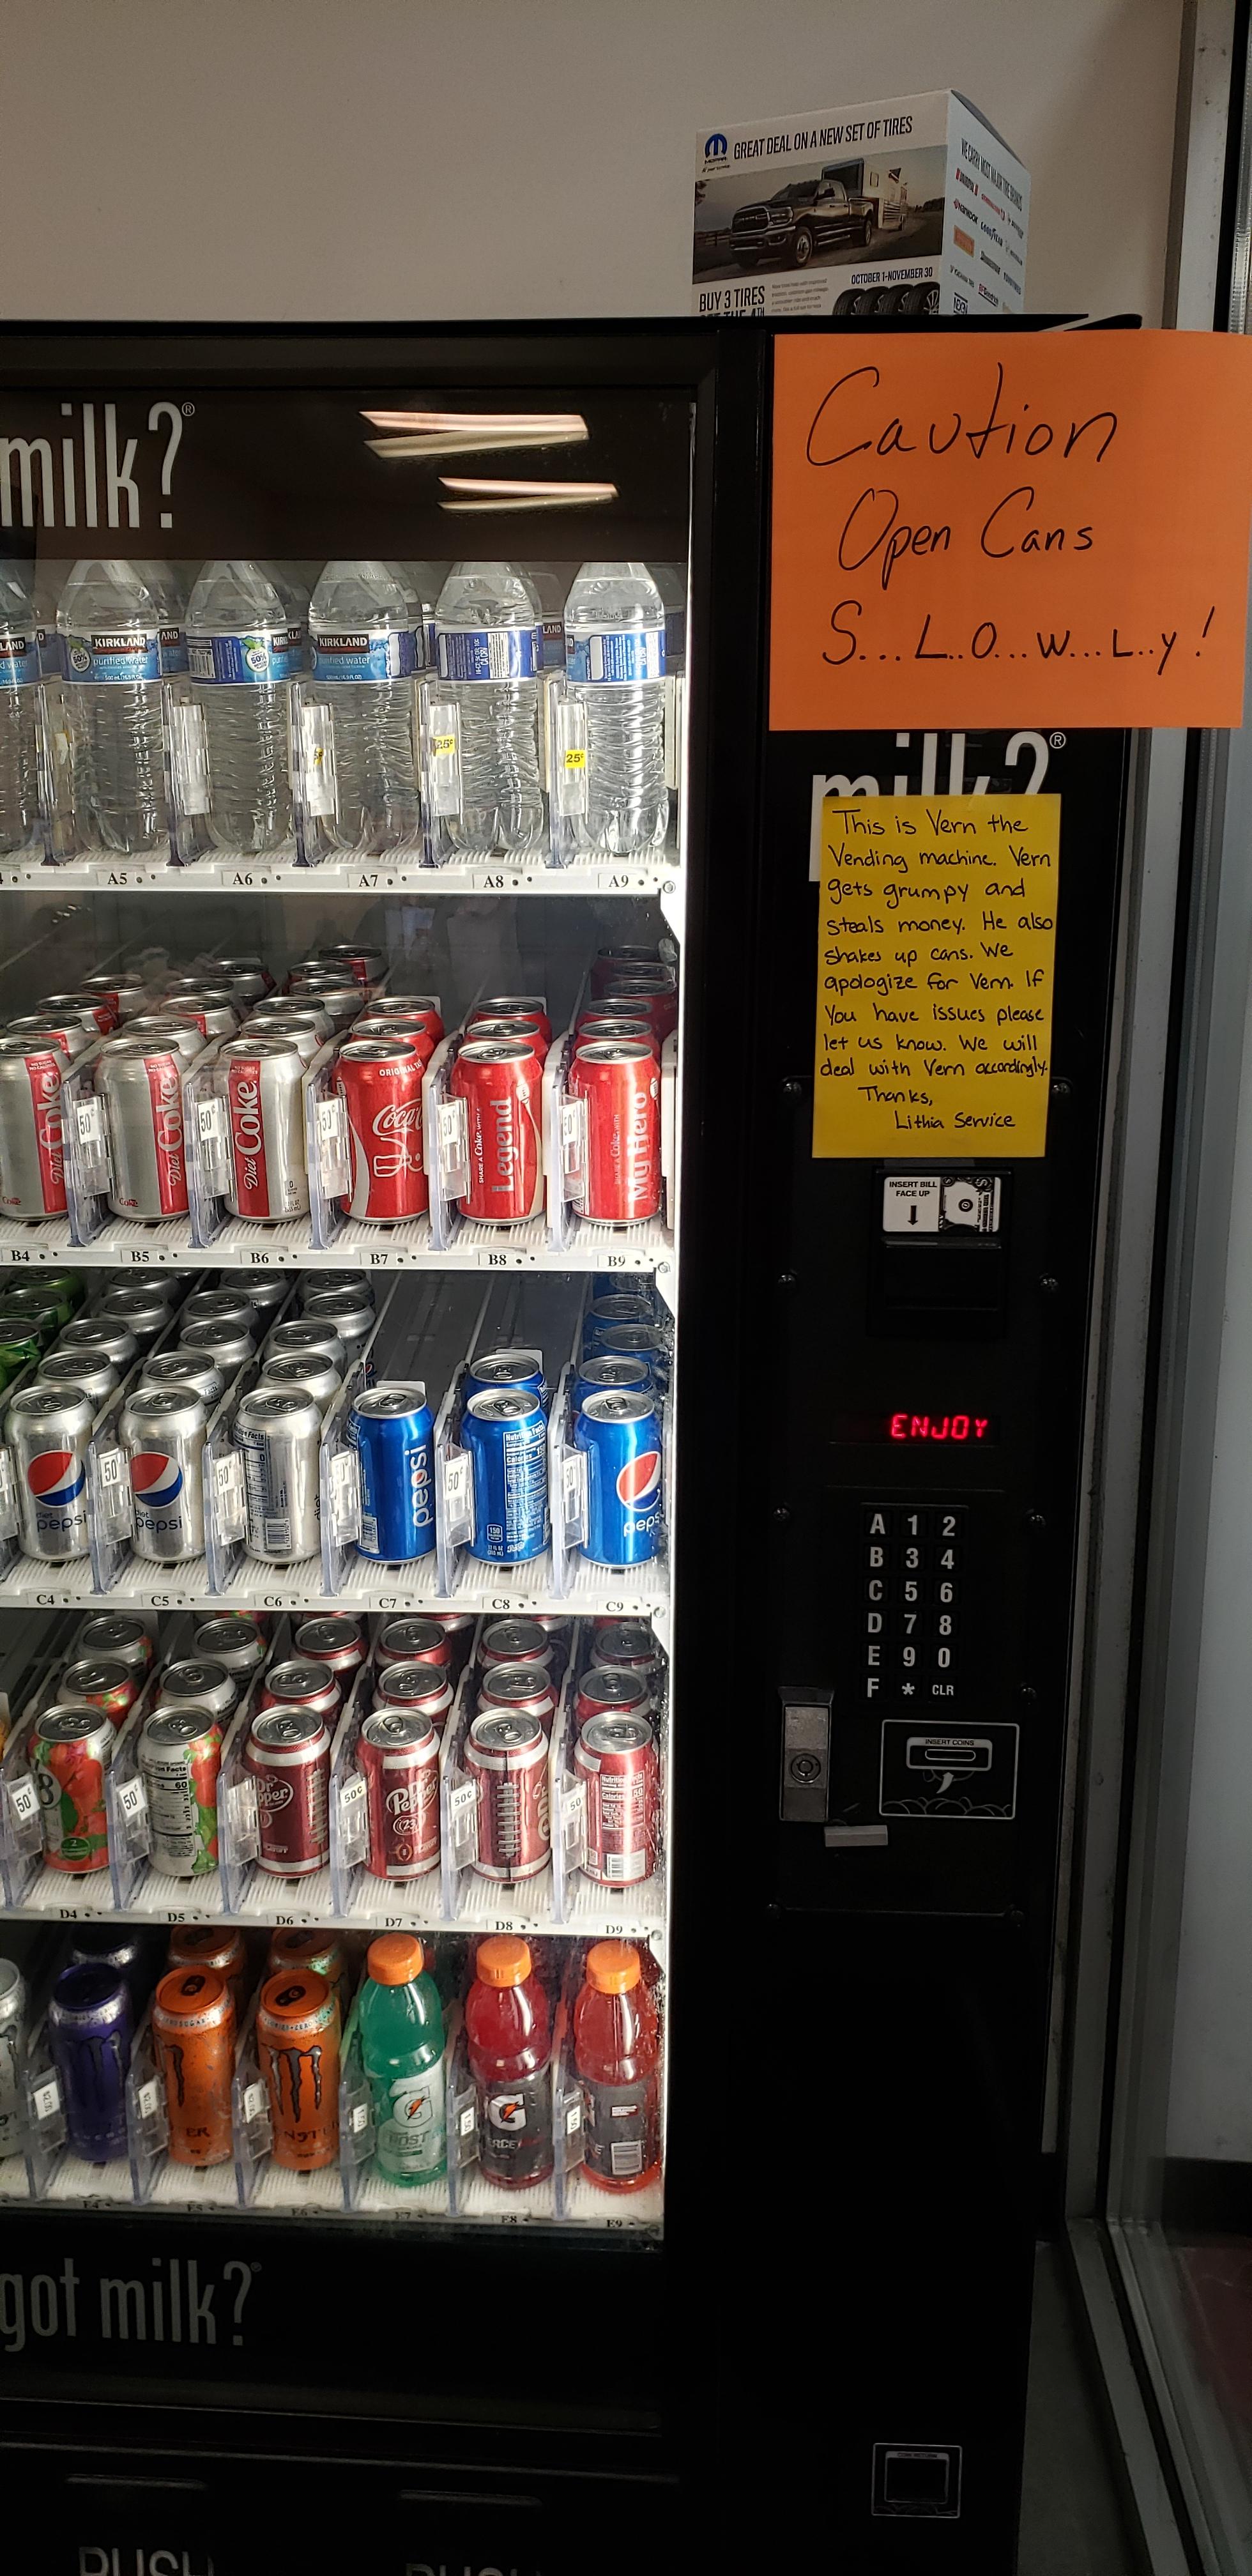 vending machine - Caution Open Cans S.. Lowry! got milk?